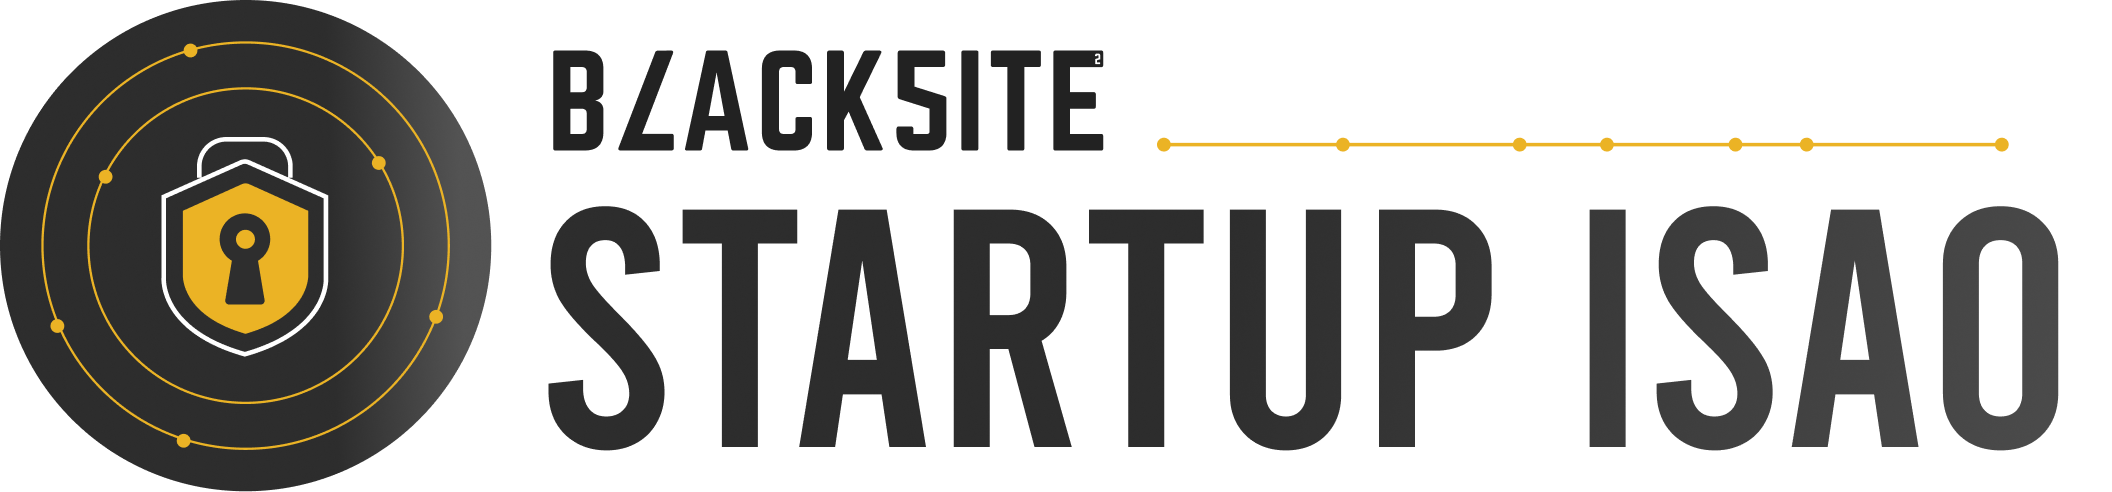 Blacksite_StartupISAO.png